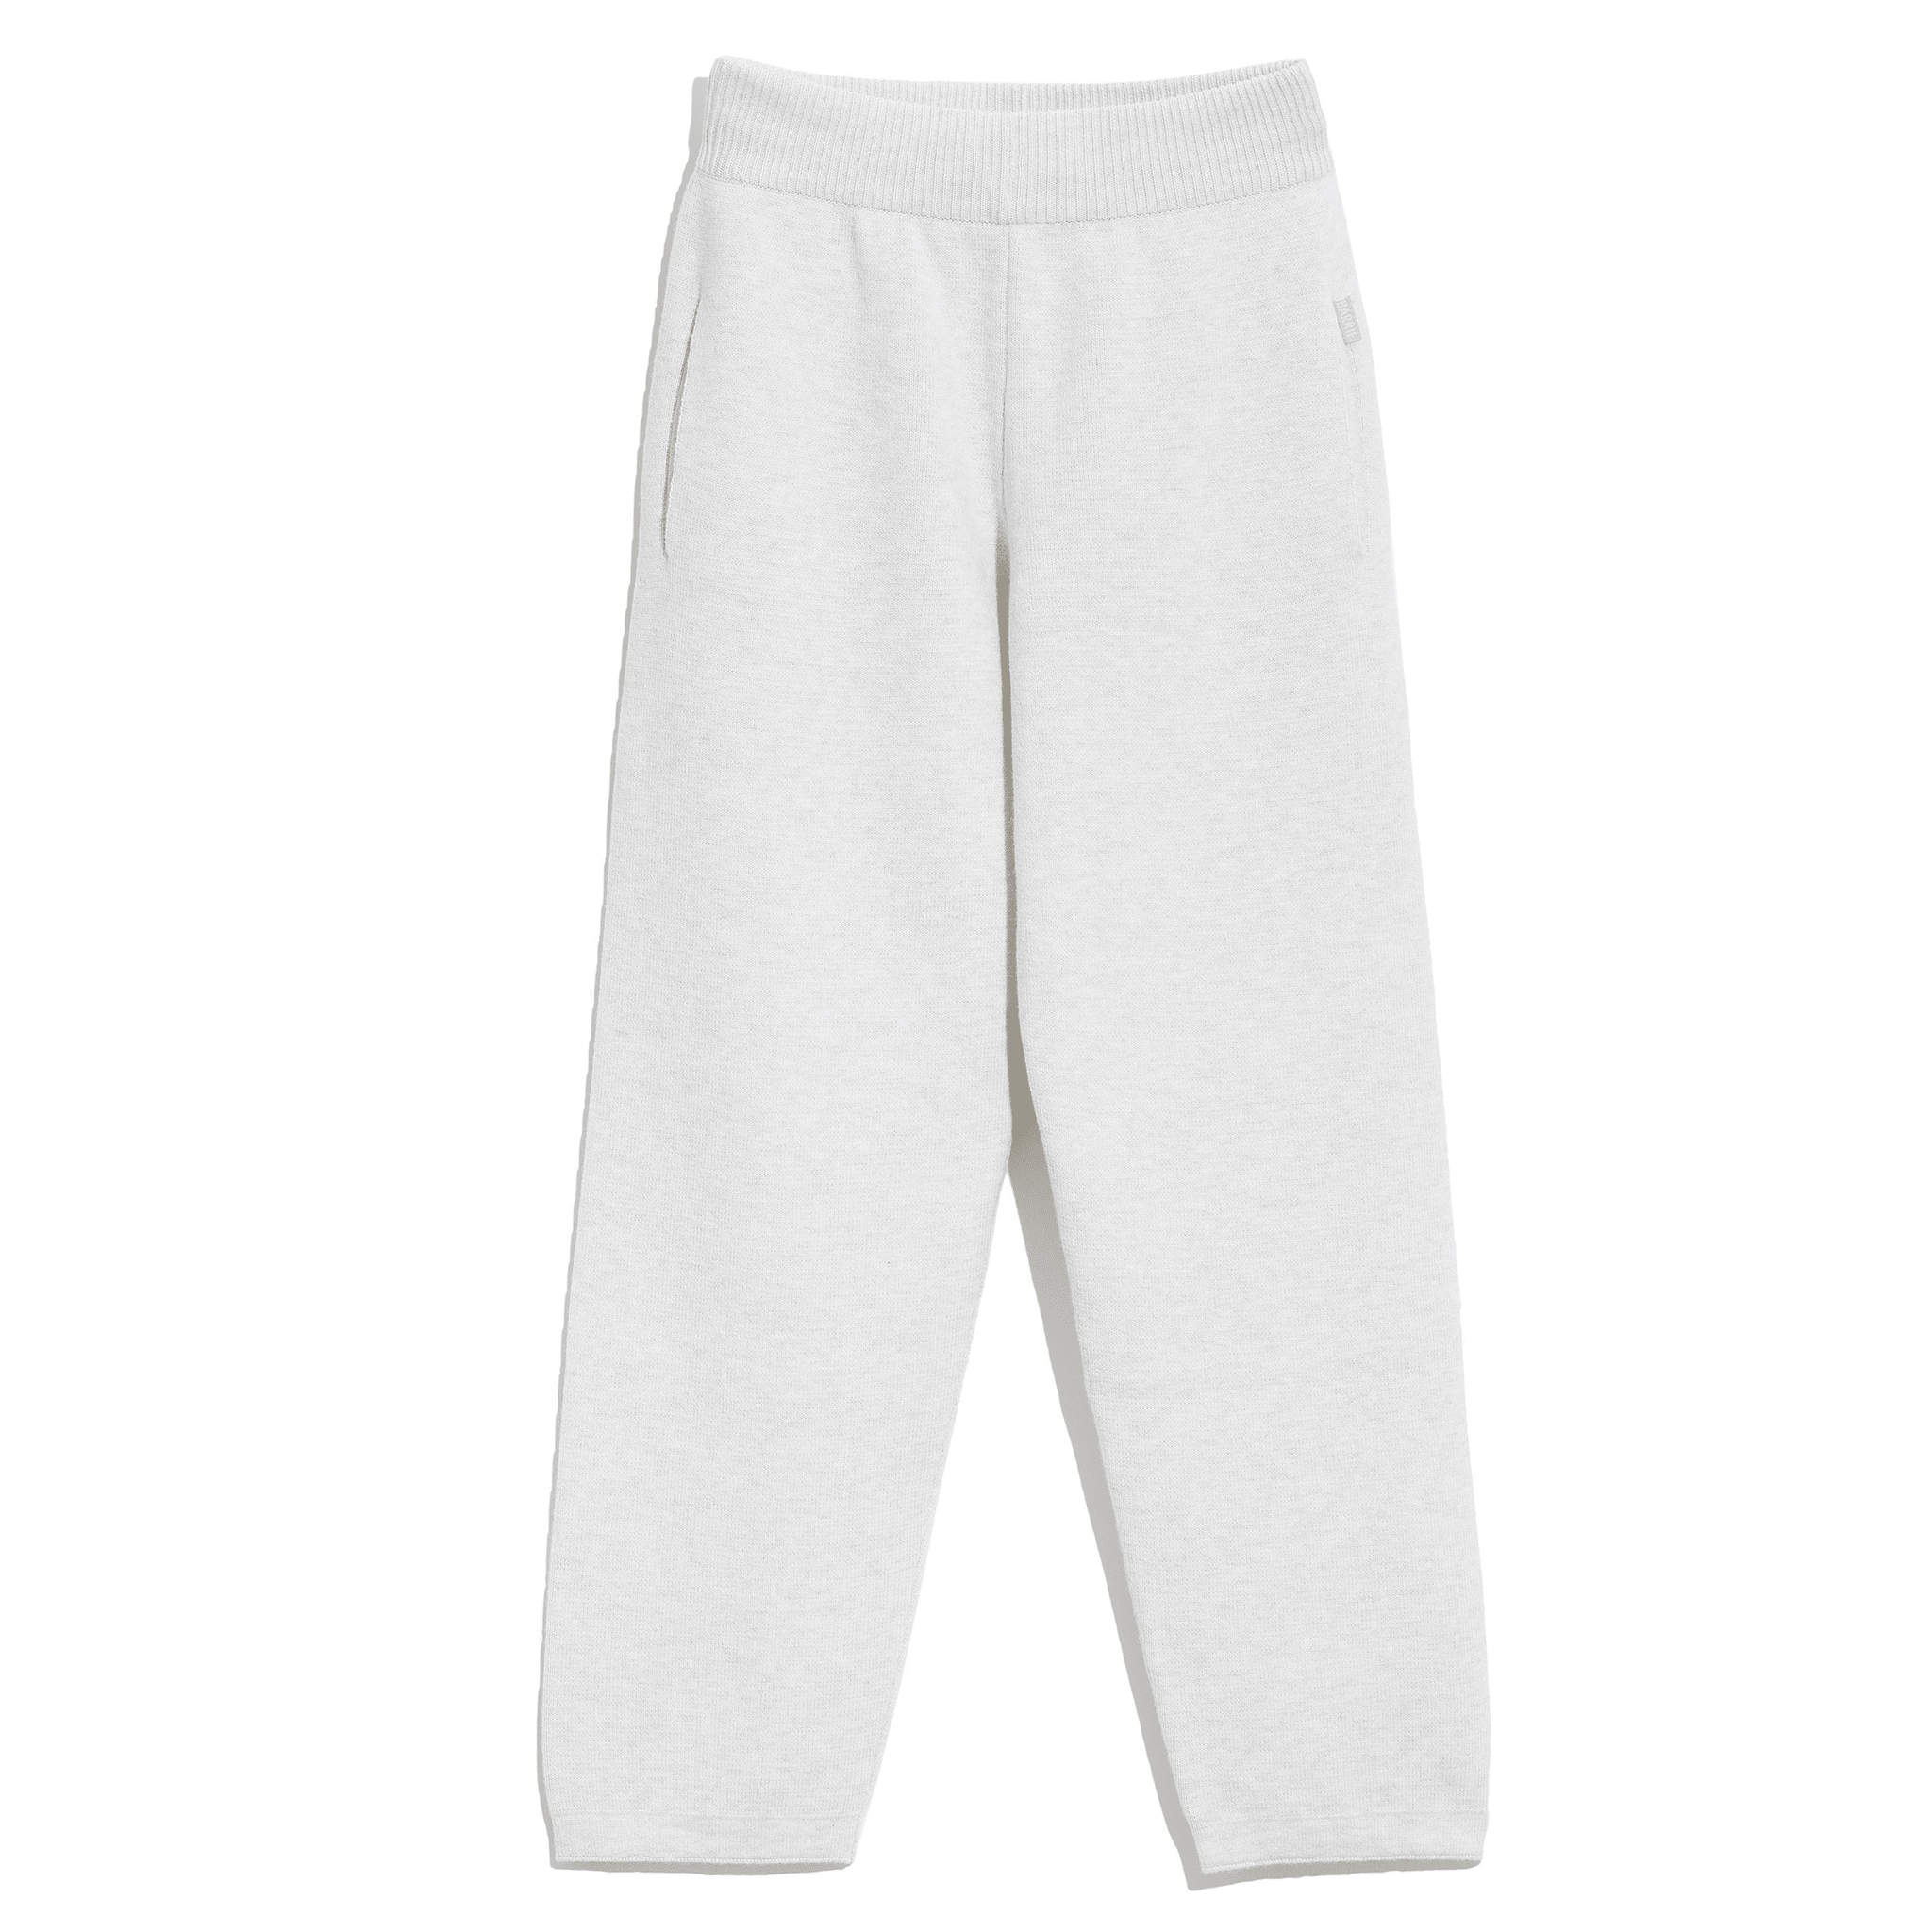 Pantalon de jogging en cachemire mélangé (Blanc naturel) - Femme, Coton,  Nylon, Pur cachemire